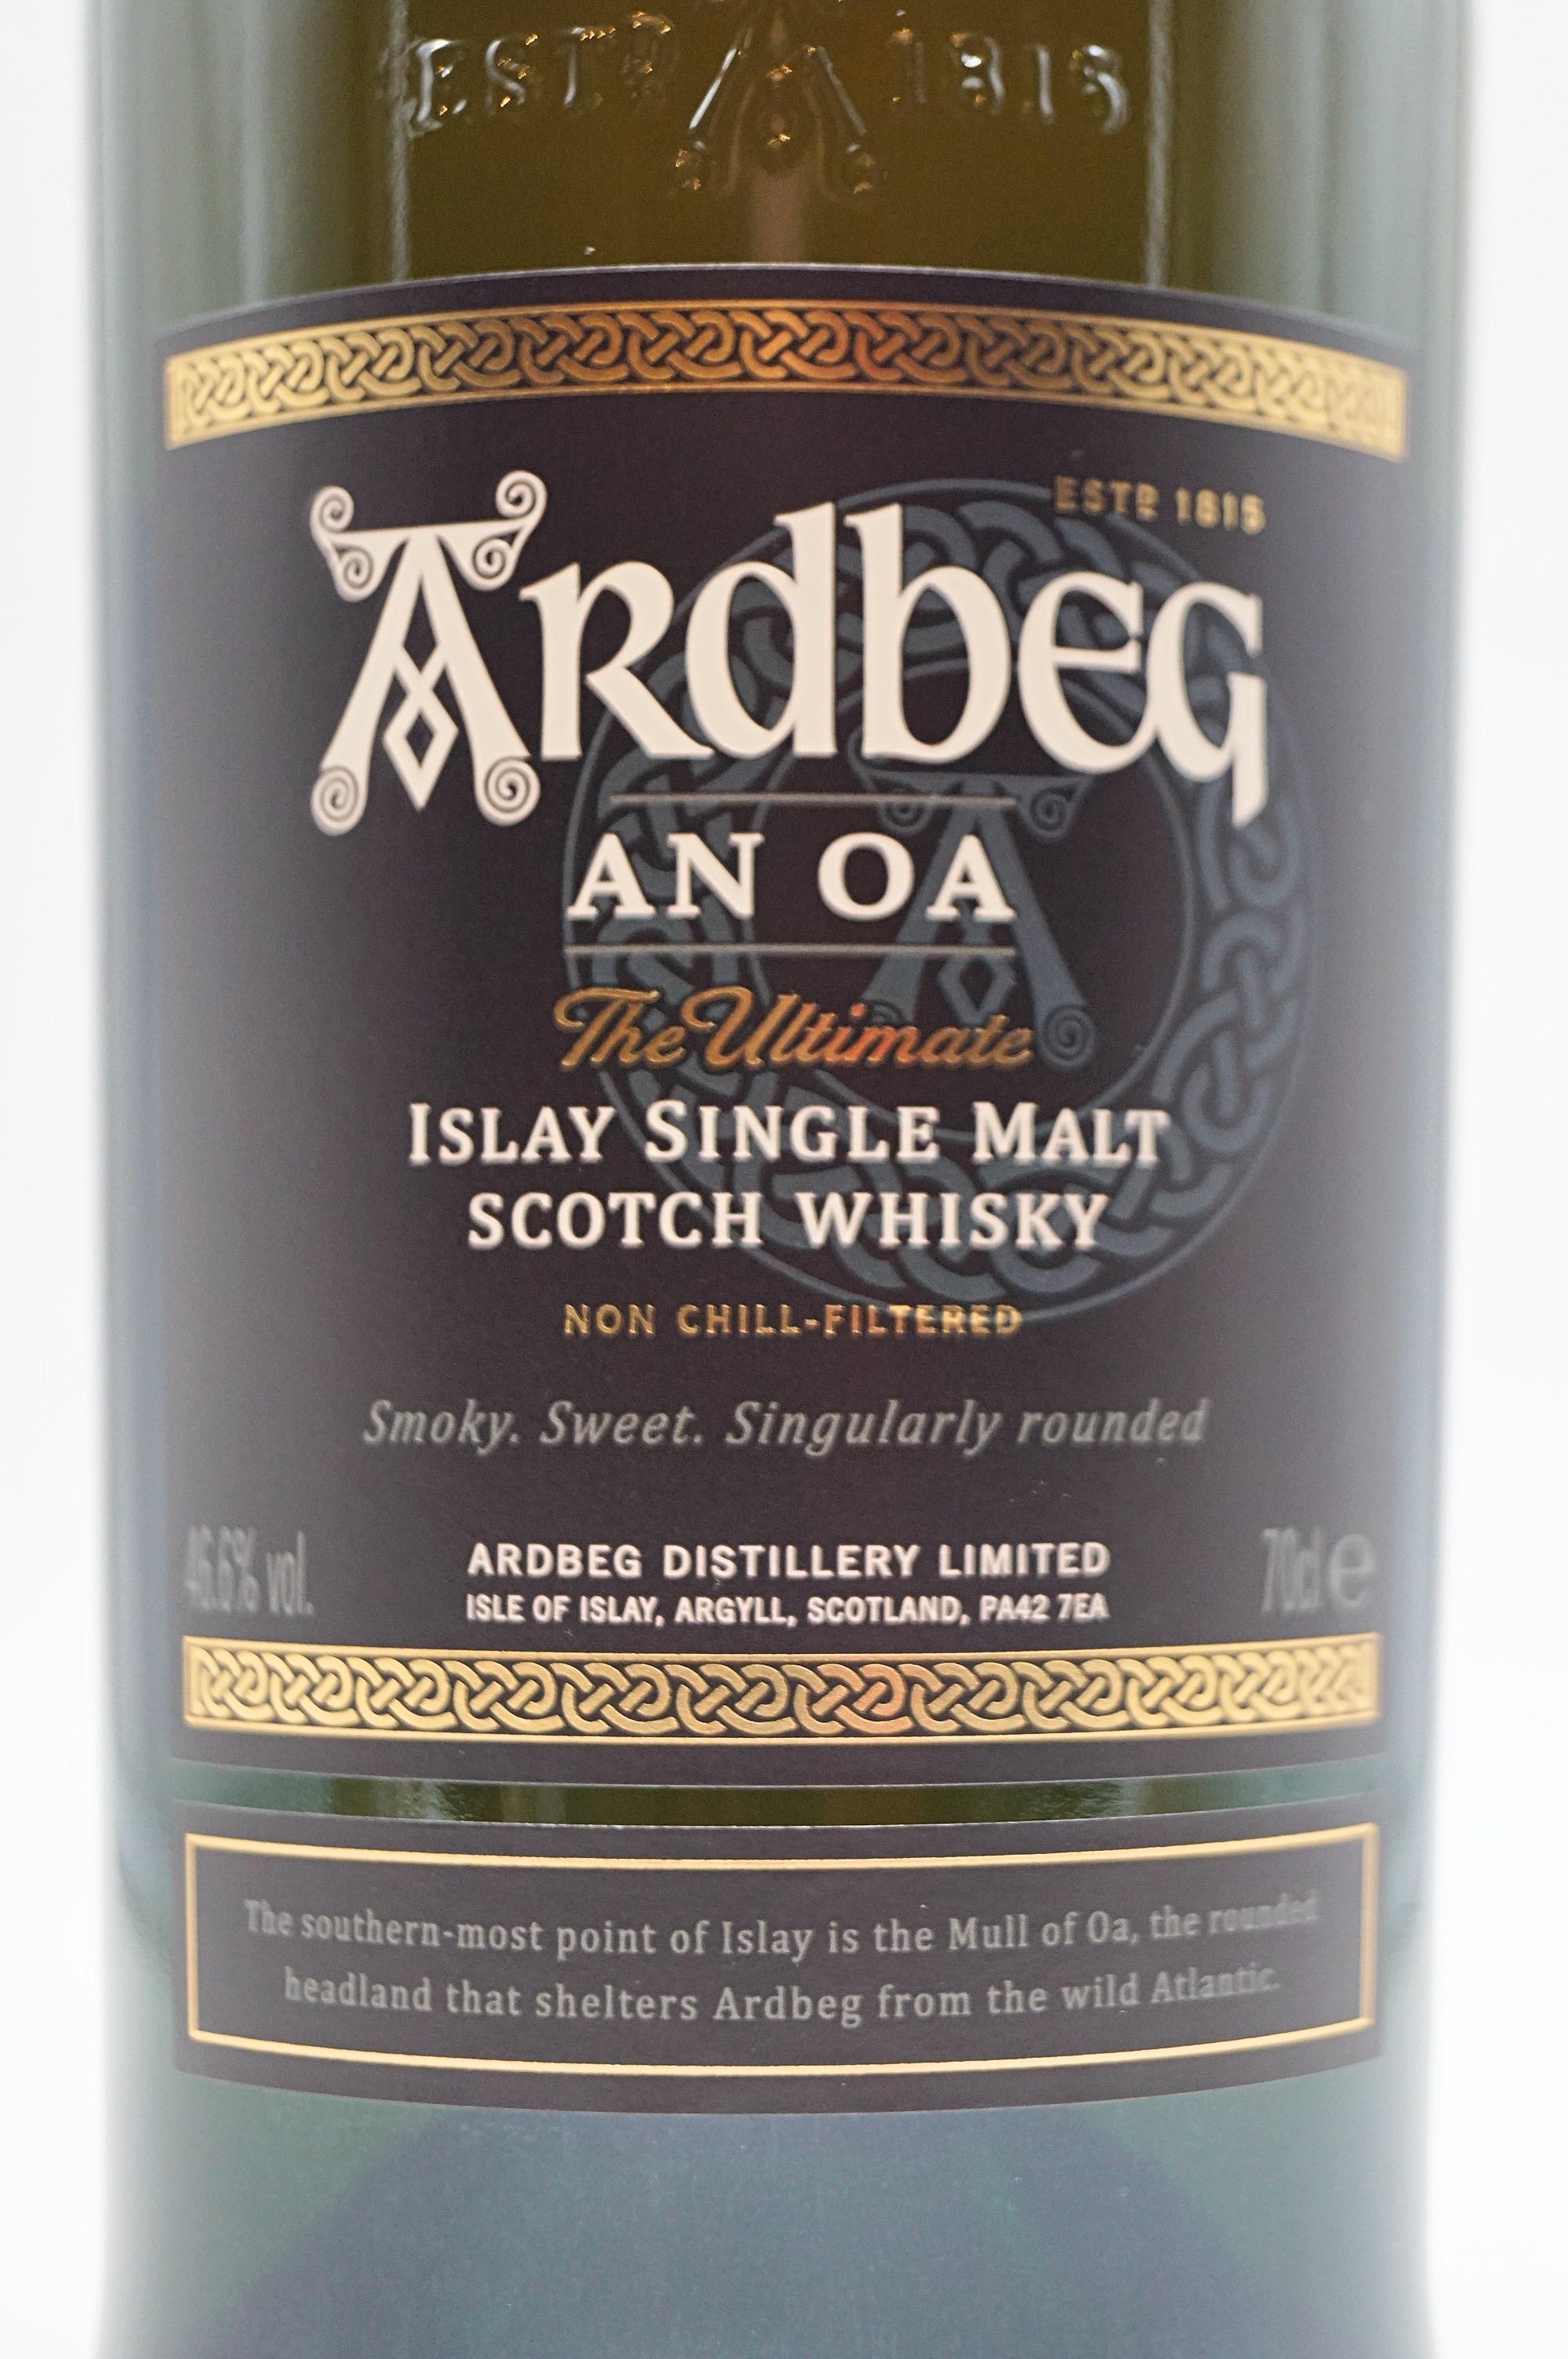 AN OA Single Malt Scotch Whisky